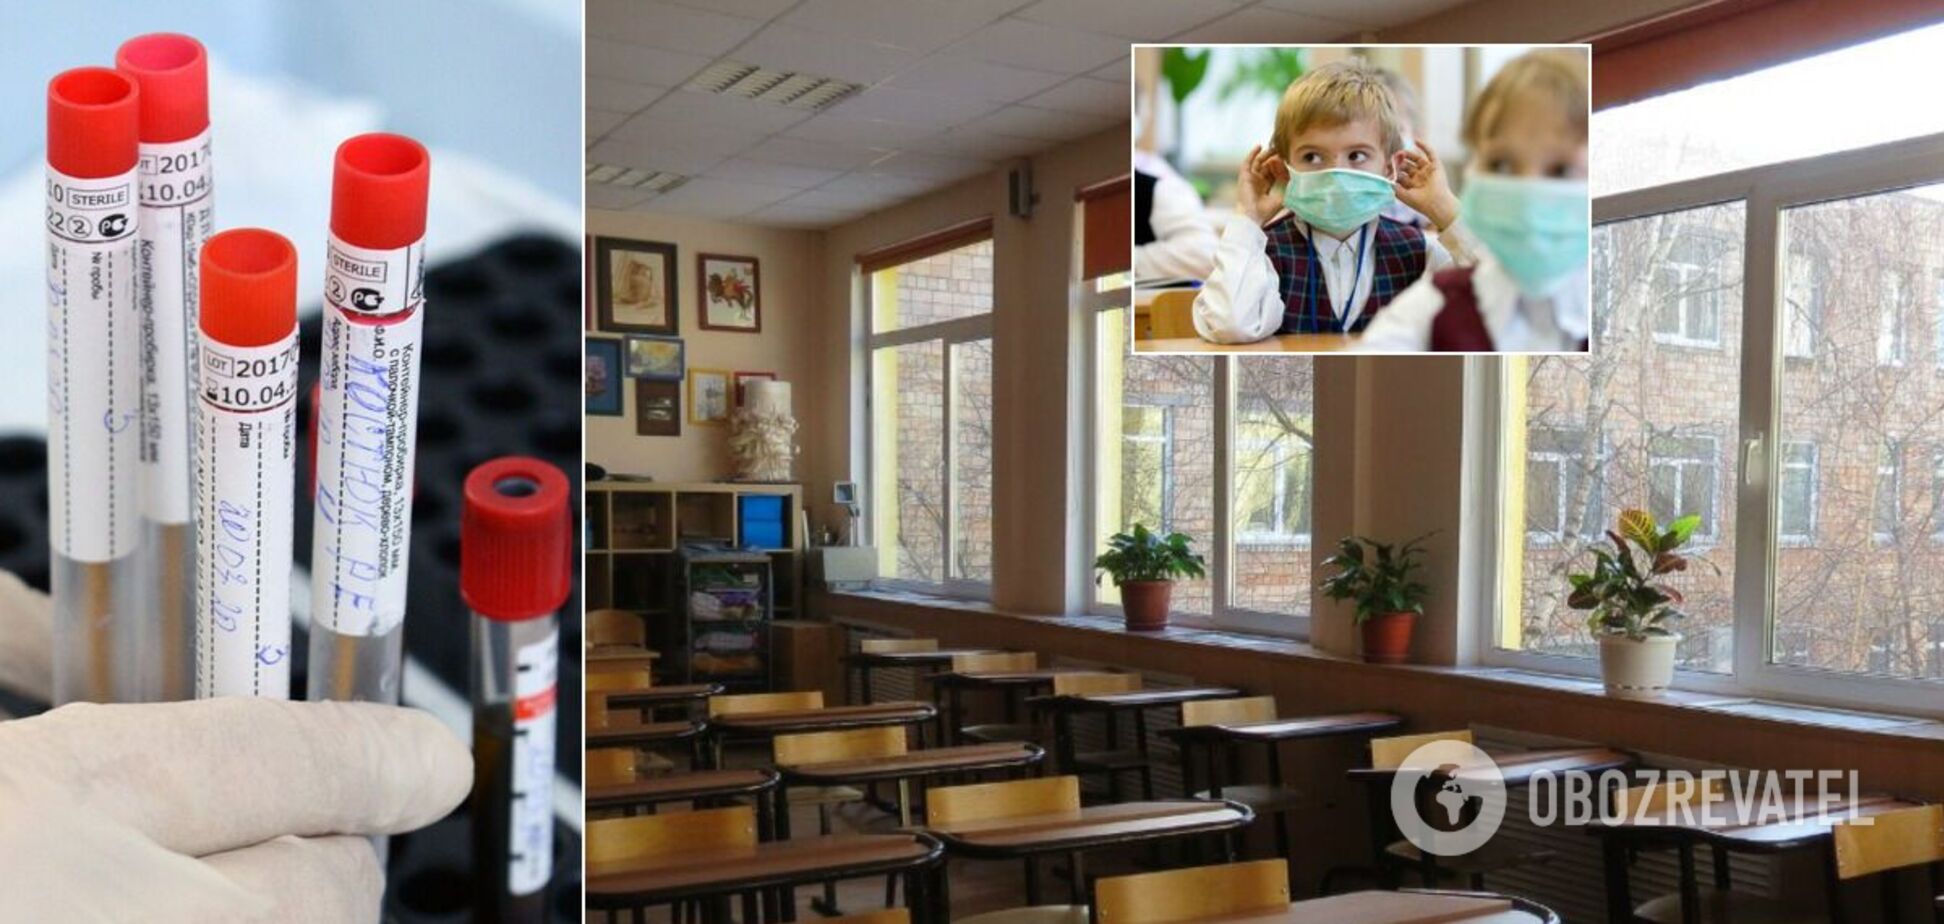 Дети в школах рискуют заболеть COVID-19, вопрос вакцинации становится критическим, –​​​​​​​ инфекционист